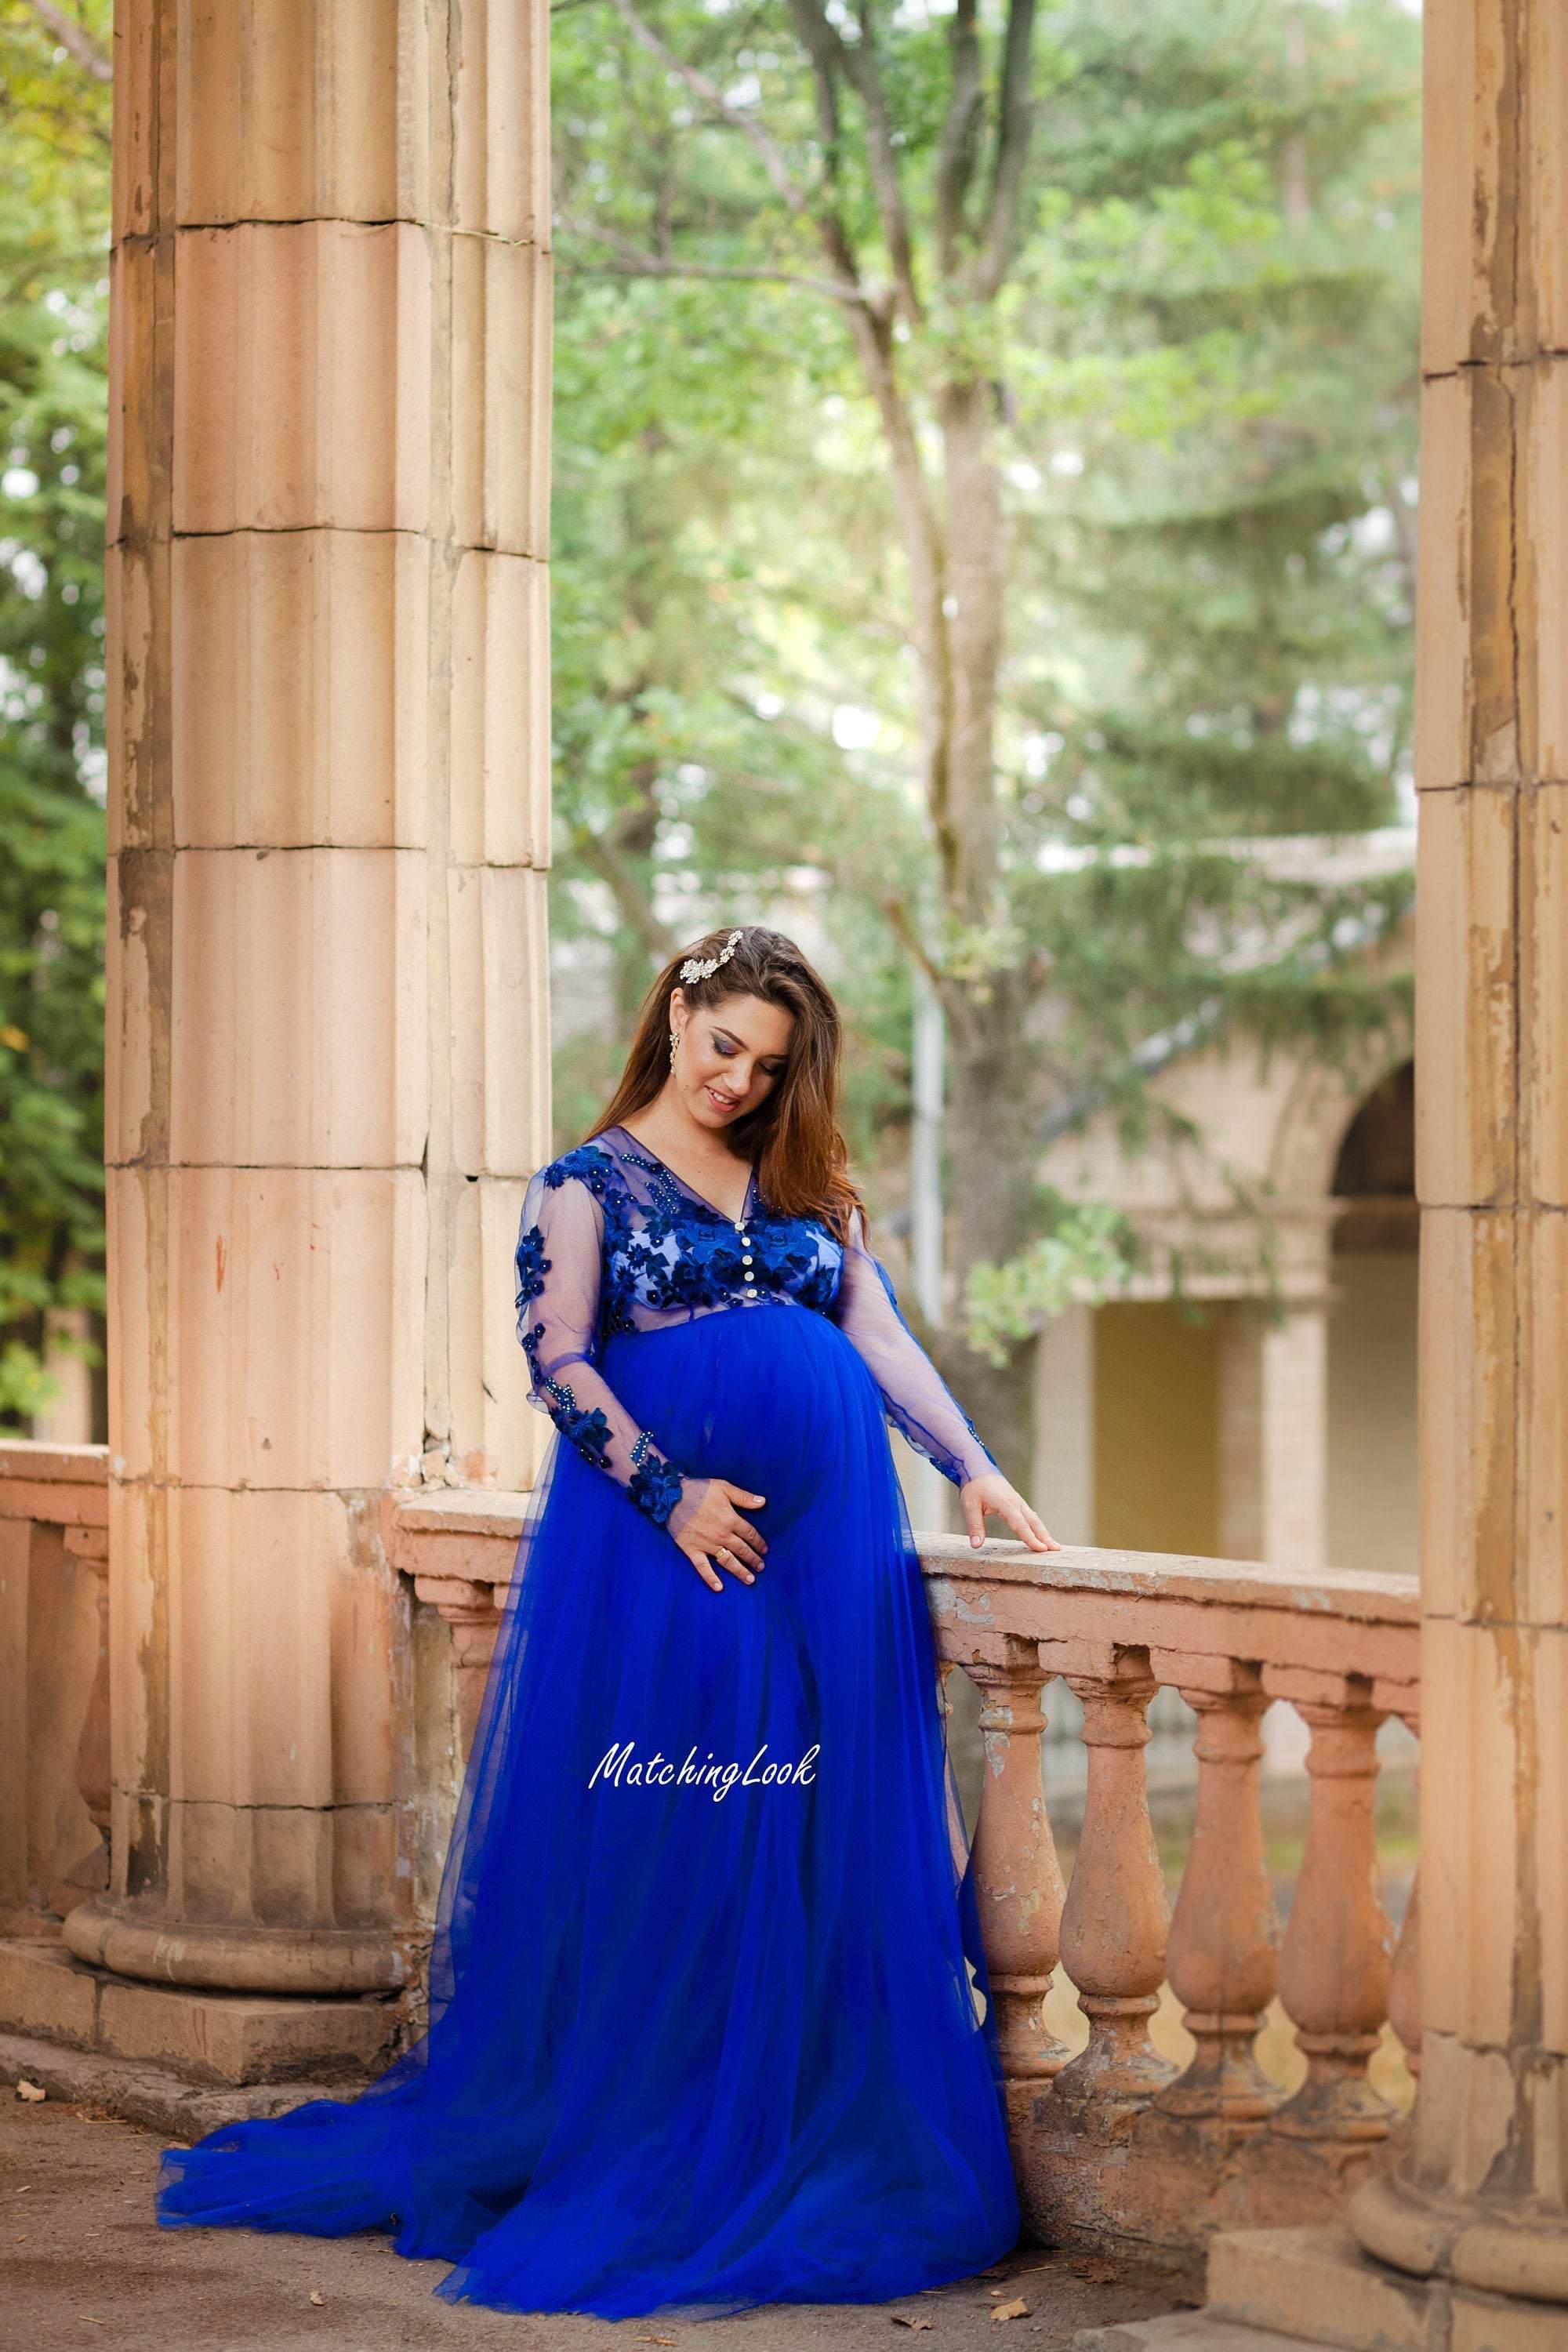 royal blue infant dress